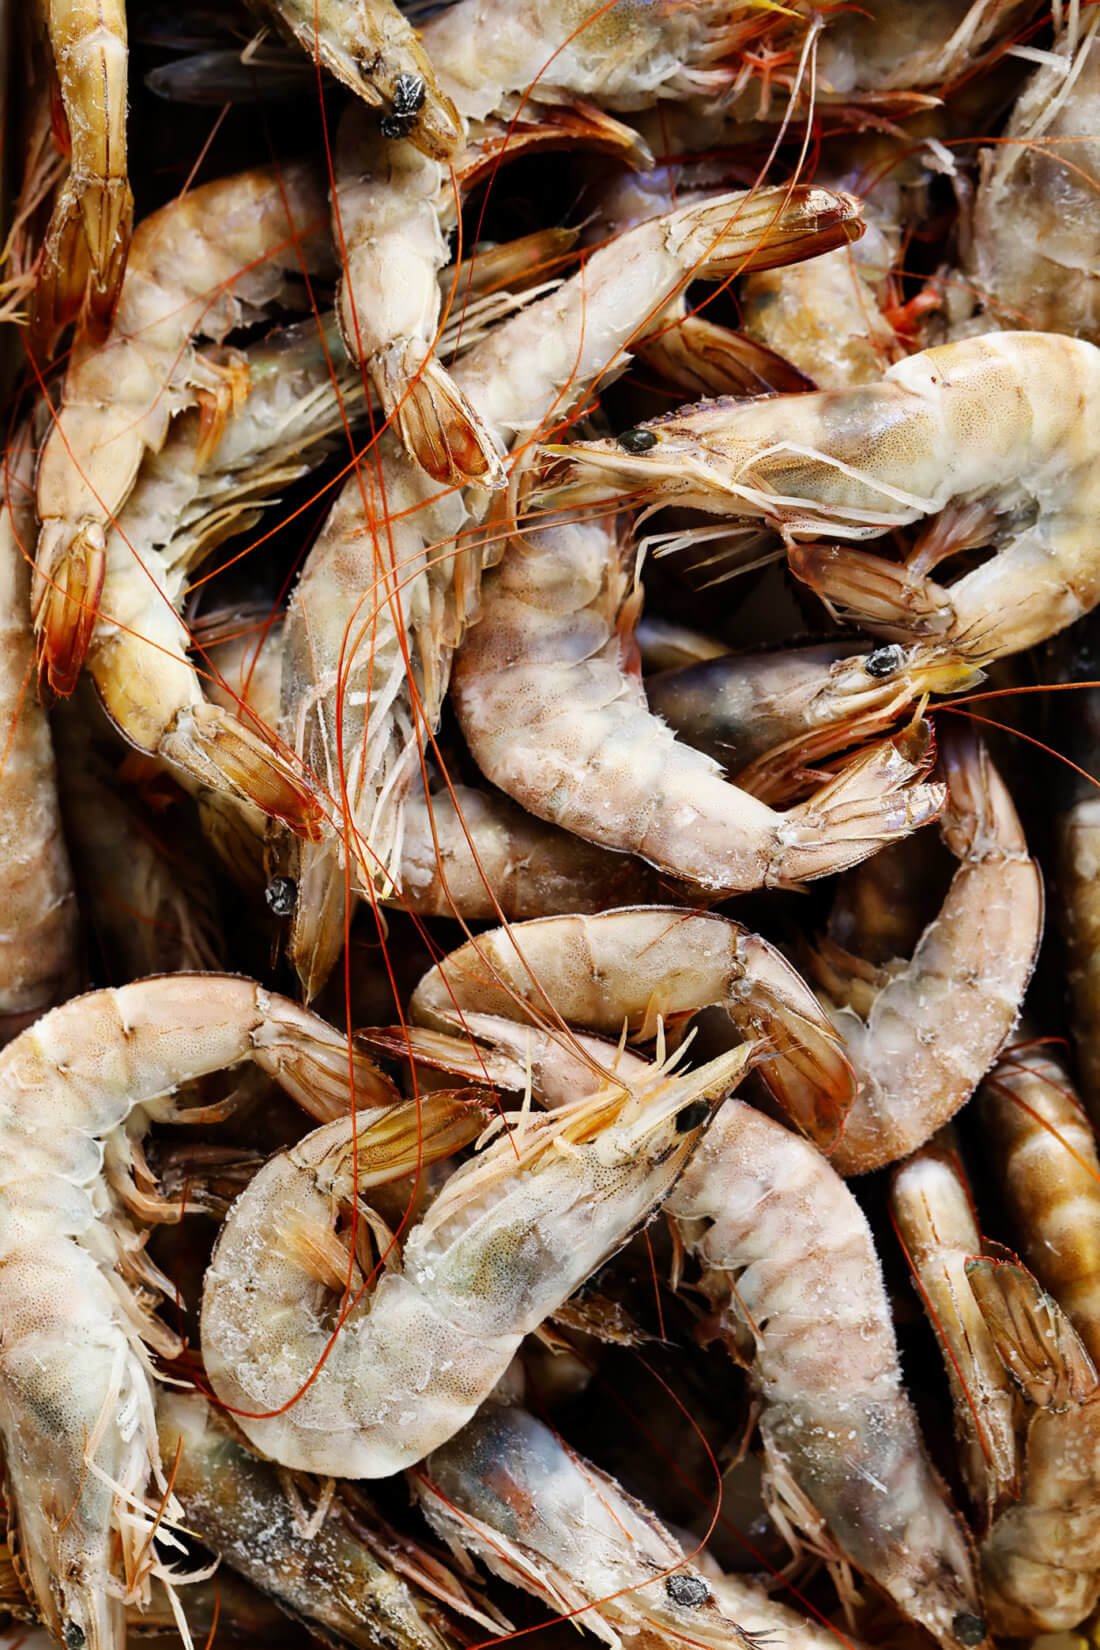 Spanish Gambas (Shrimp)